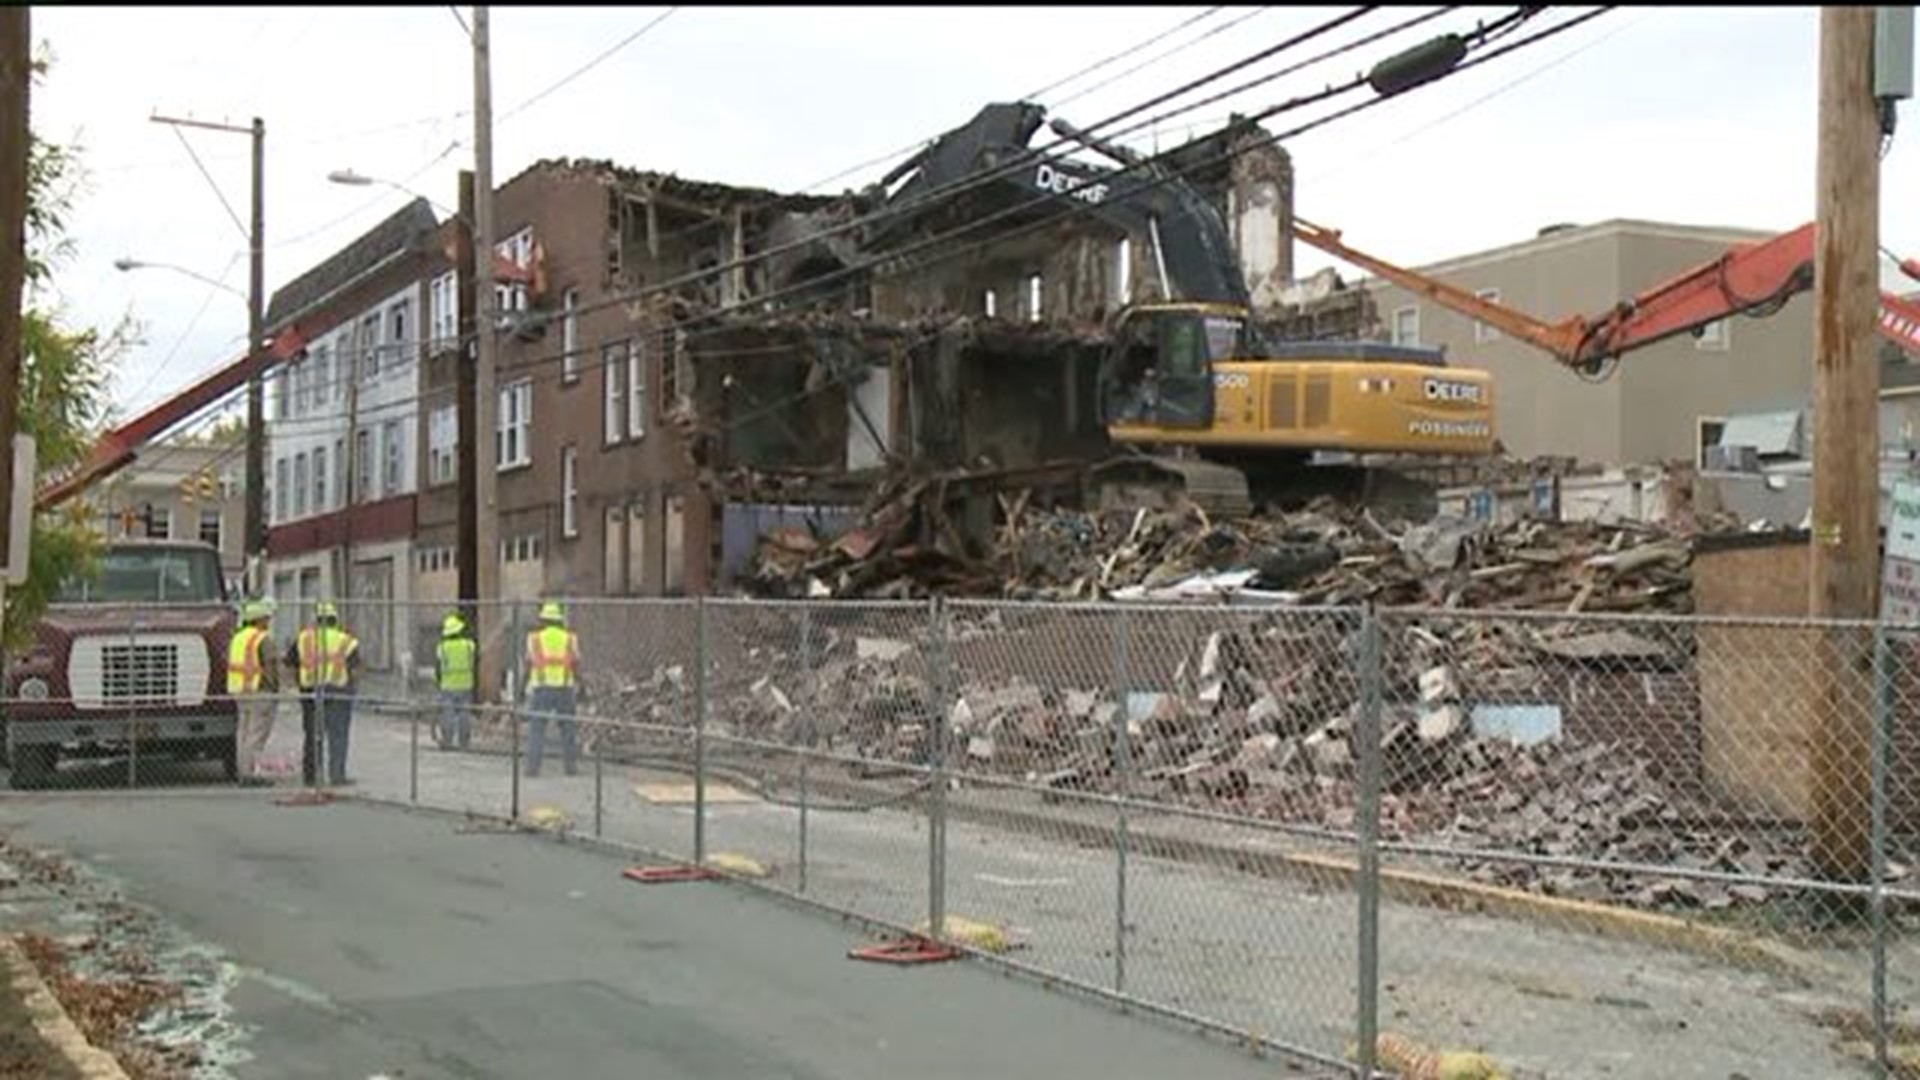 Demolition of Old Carlton House Underway